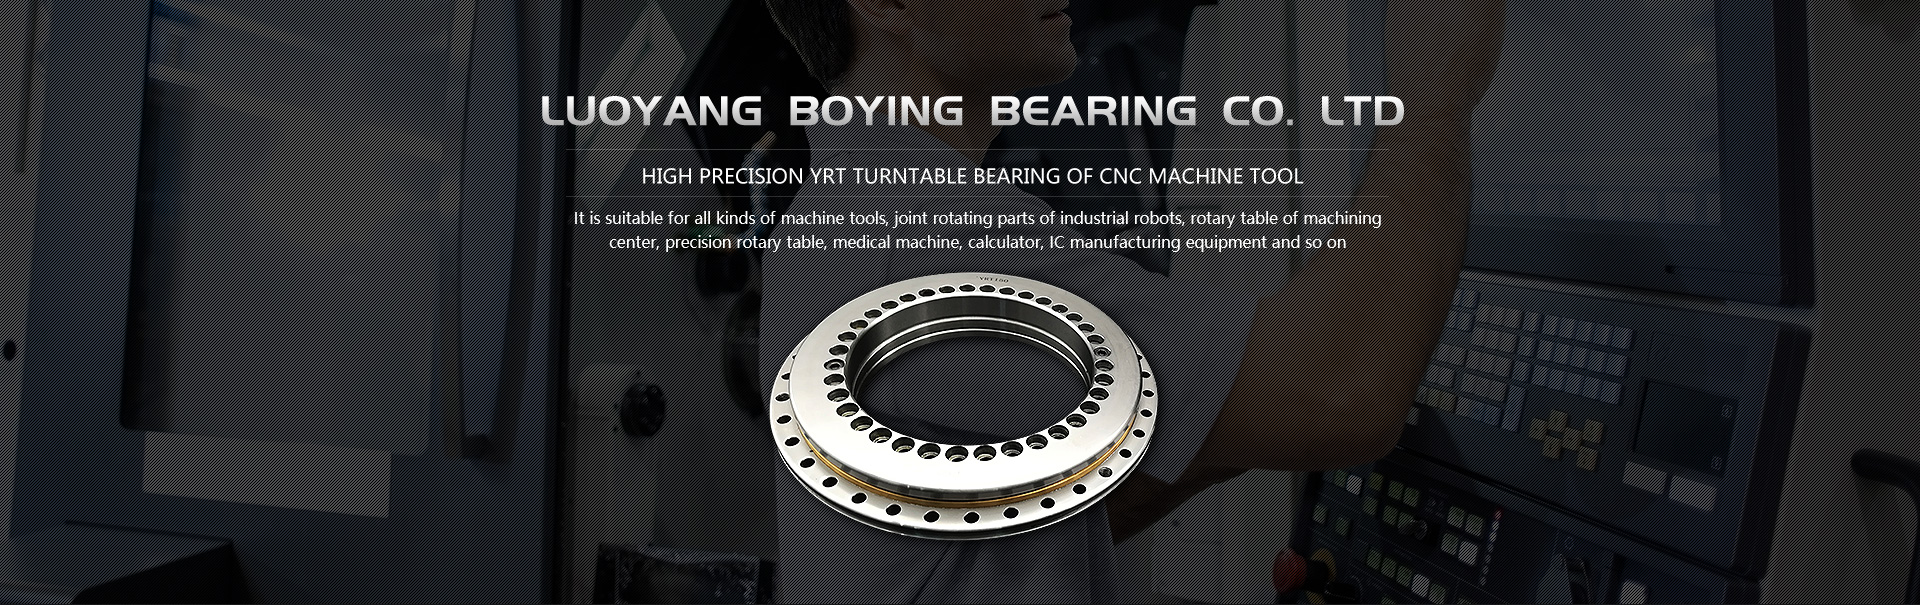 Luoyang Boying Bearing Co.,Ltd